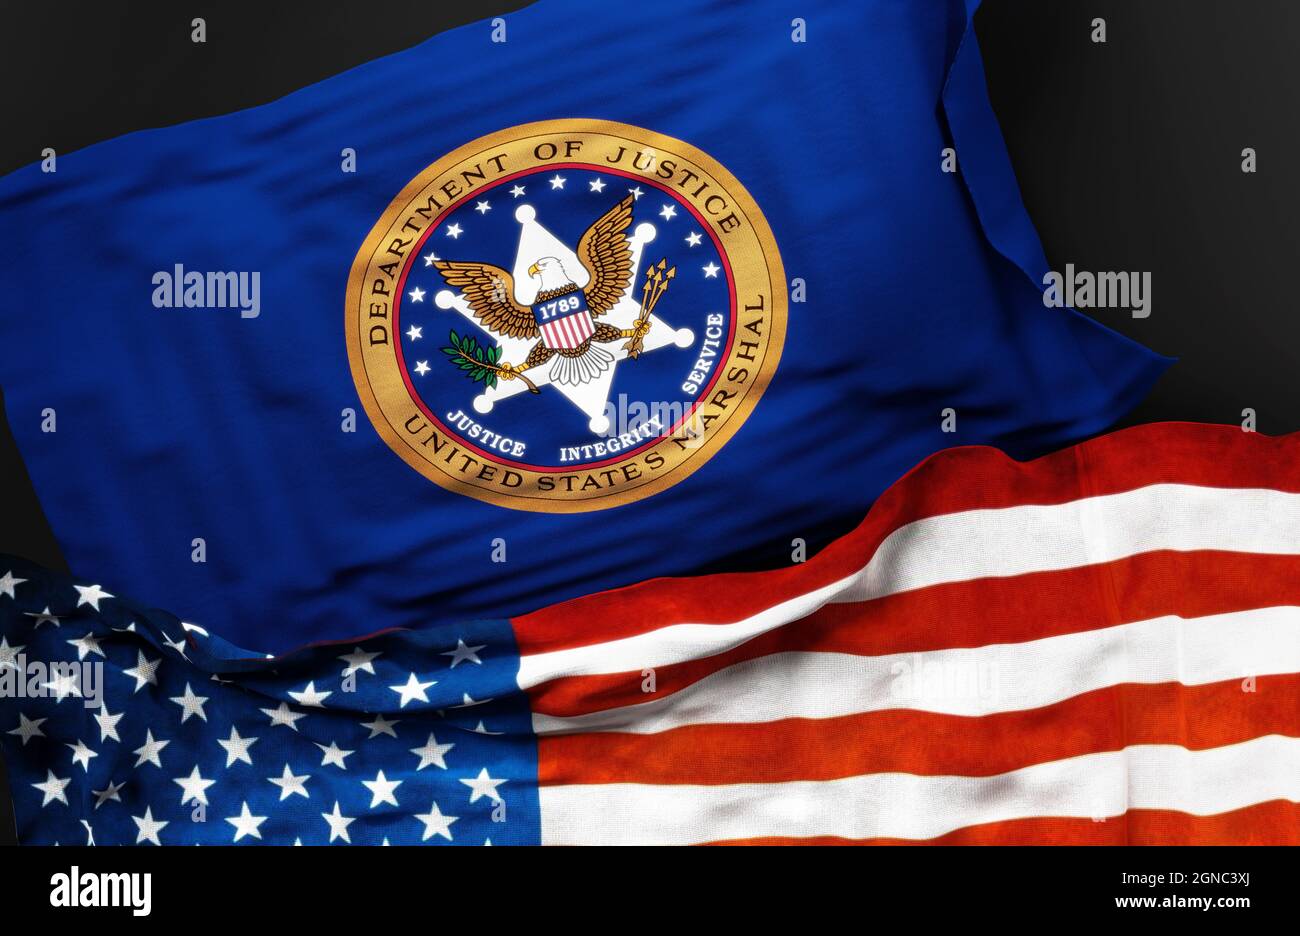 Flagge des Marschalldienstes der Vereinigten Staaten zusammen mit einer Flagge der Vereinigten Staaten von Amerika als Symbol für eine Verbindung zwischen ihnen, 3d-Illustration Stockfoto